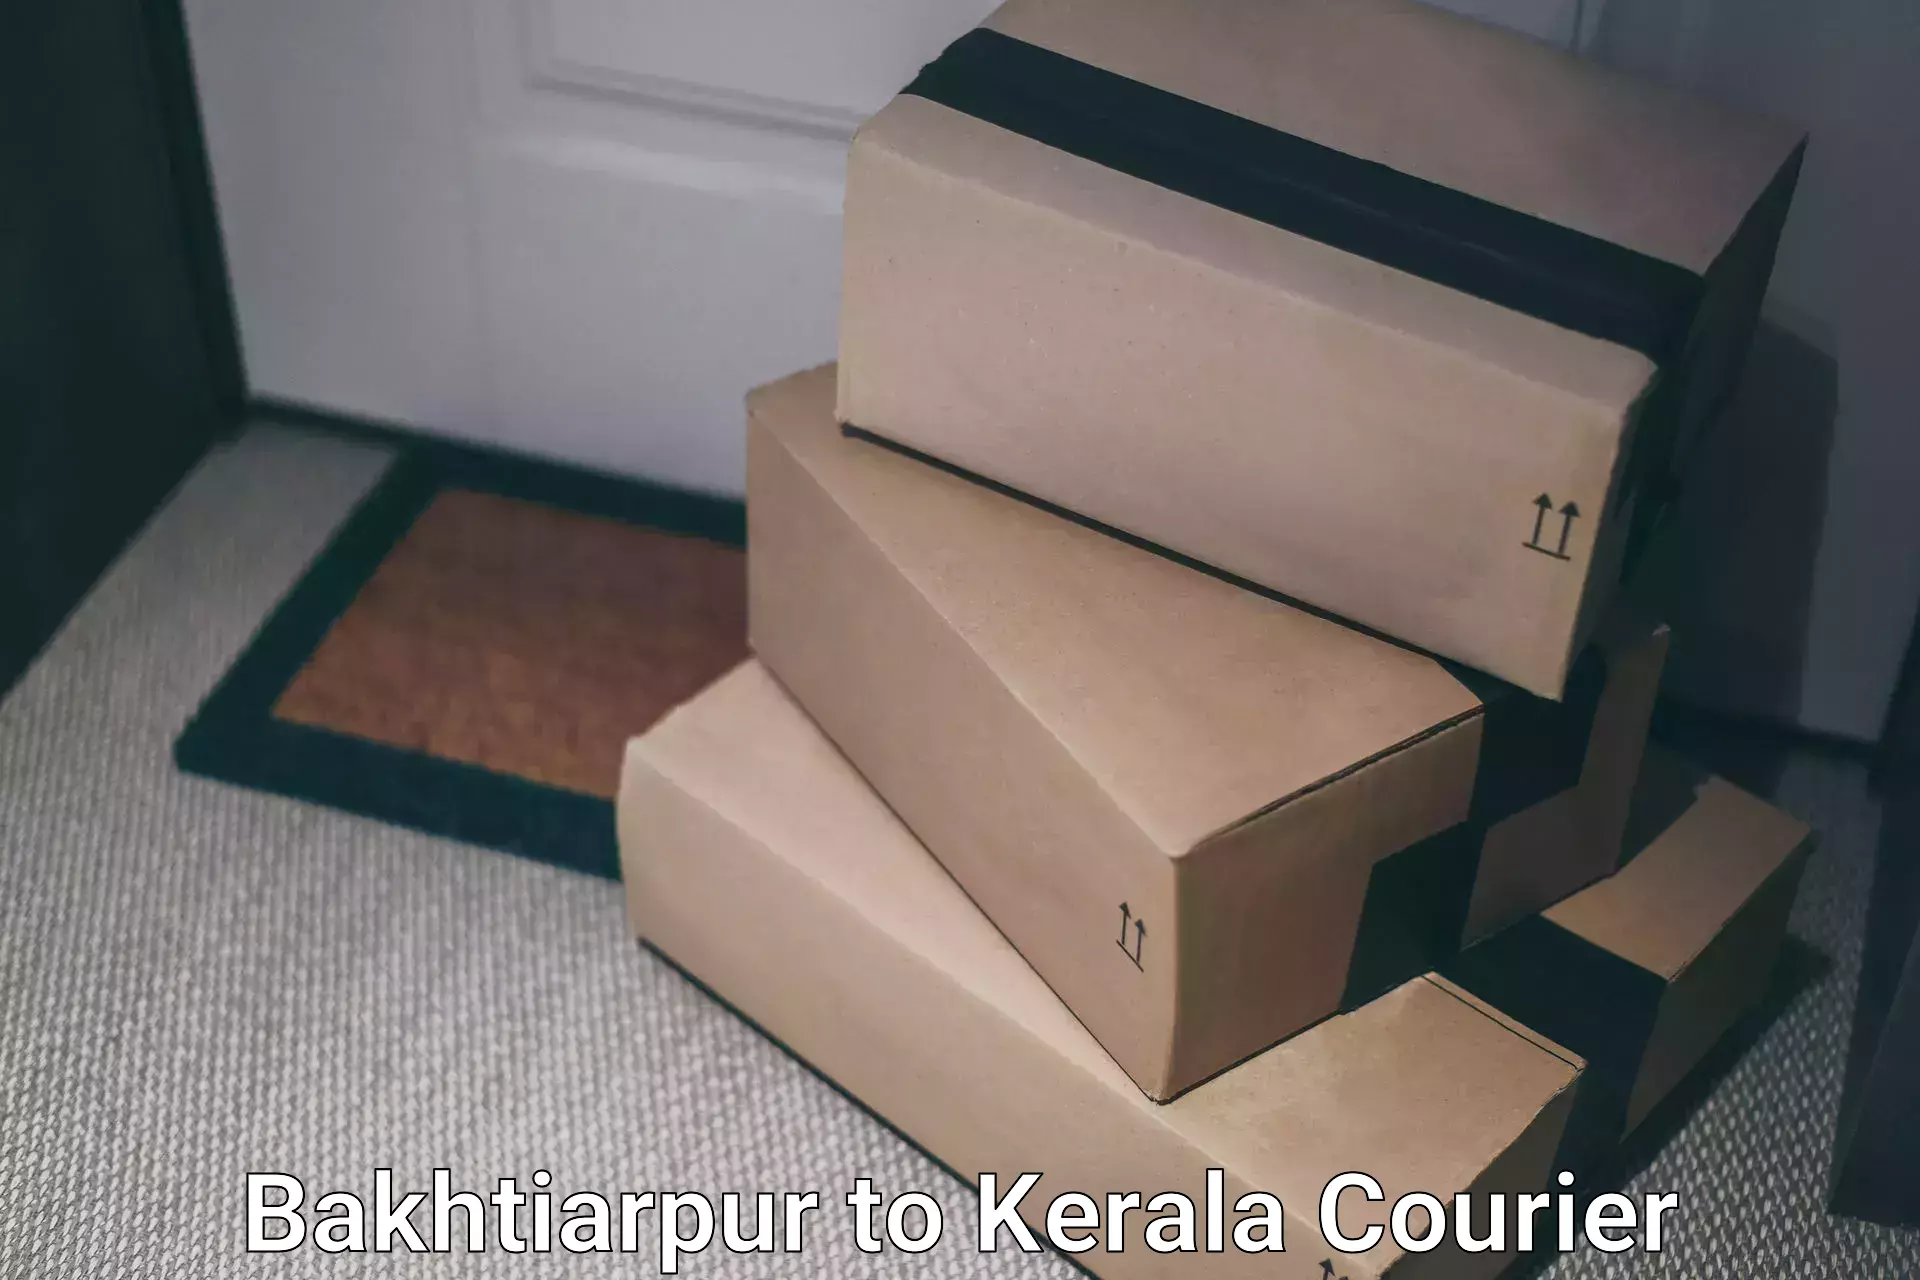 Flexible courier rates Bakhtiarpur to Perumbavoor